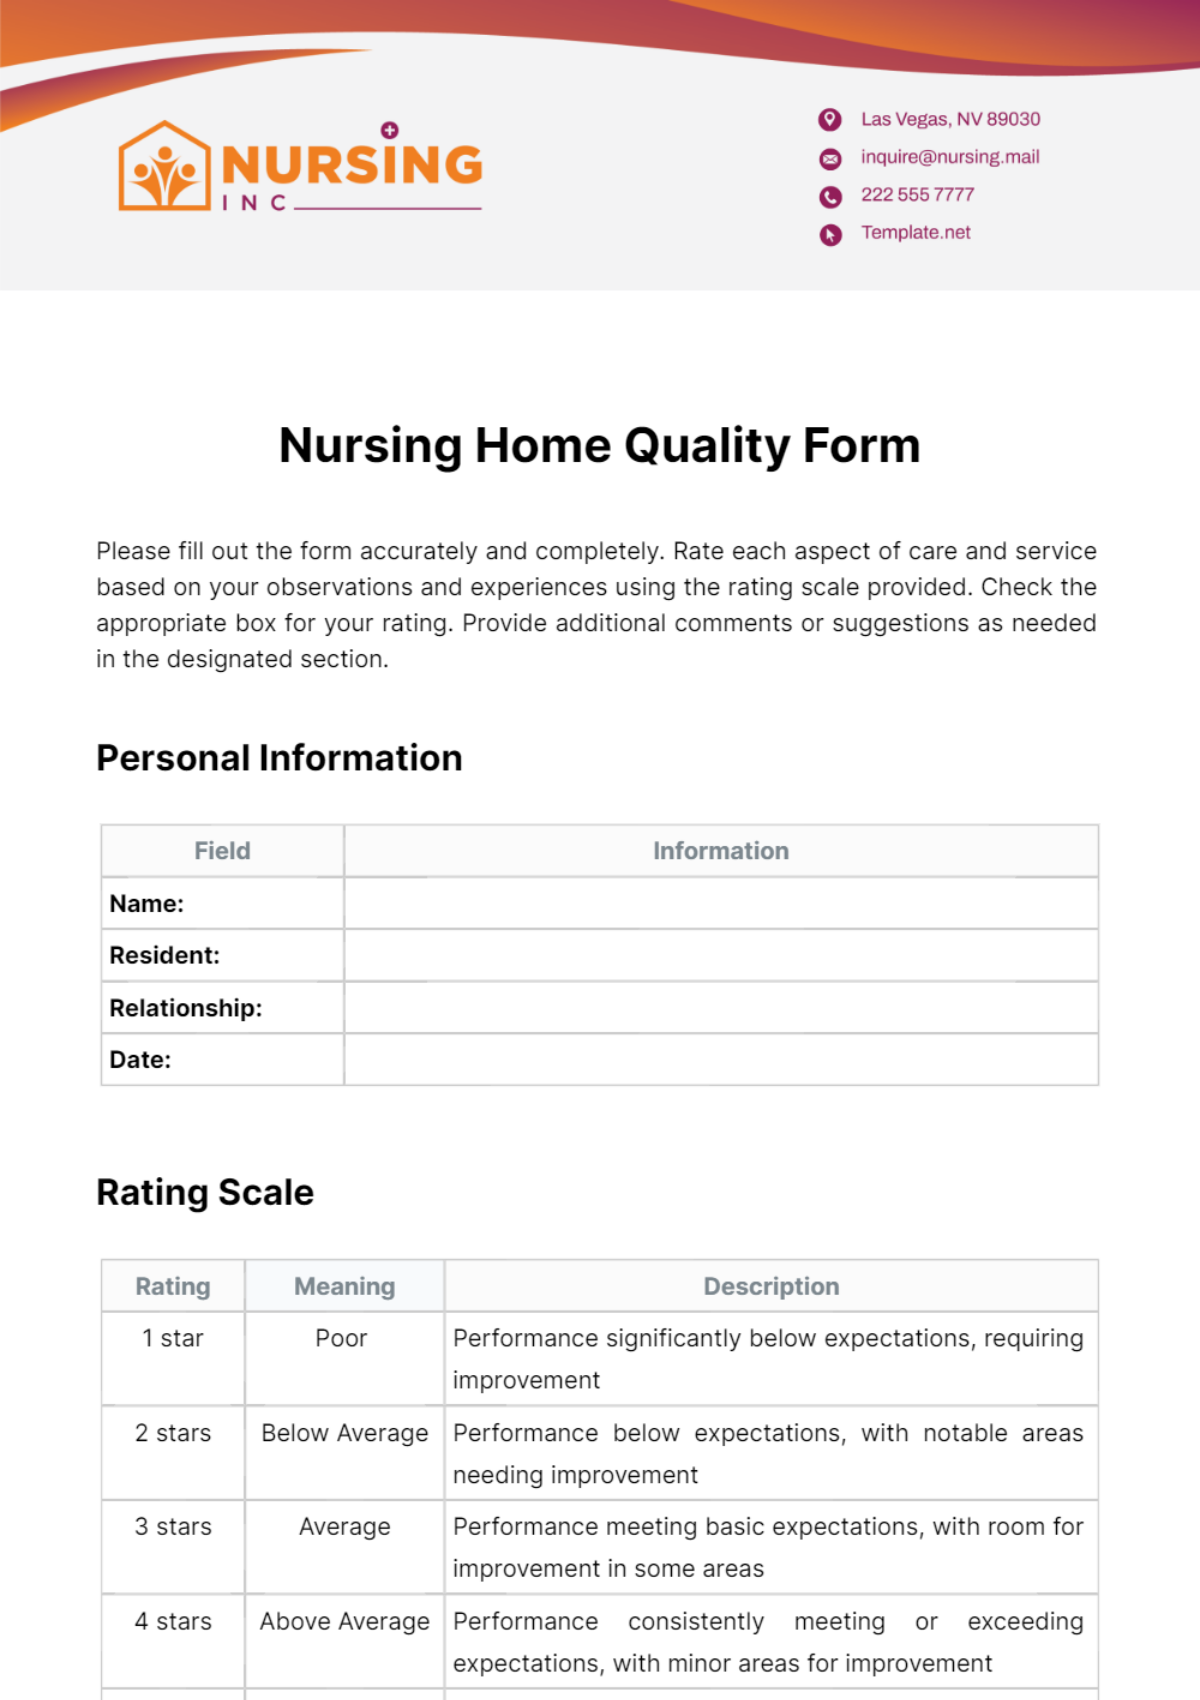 Nursing Home Quality Form Template